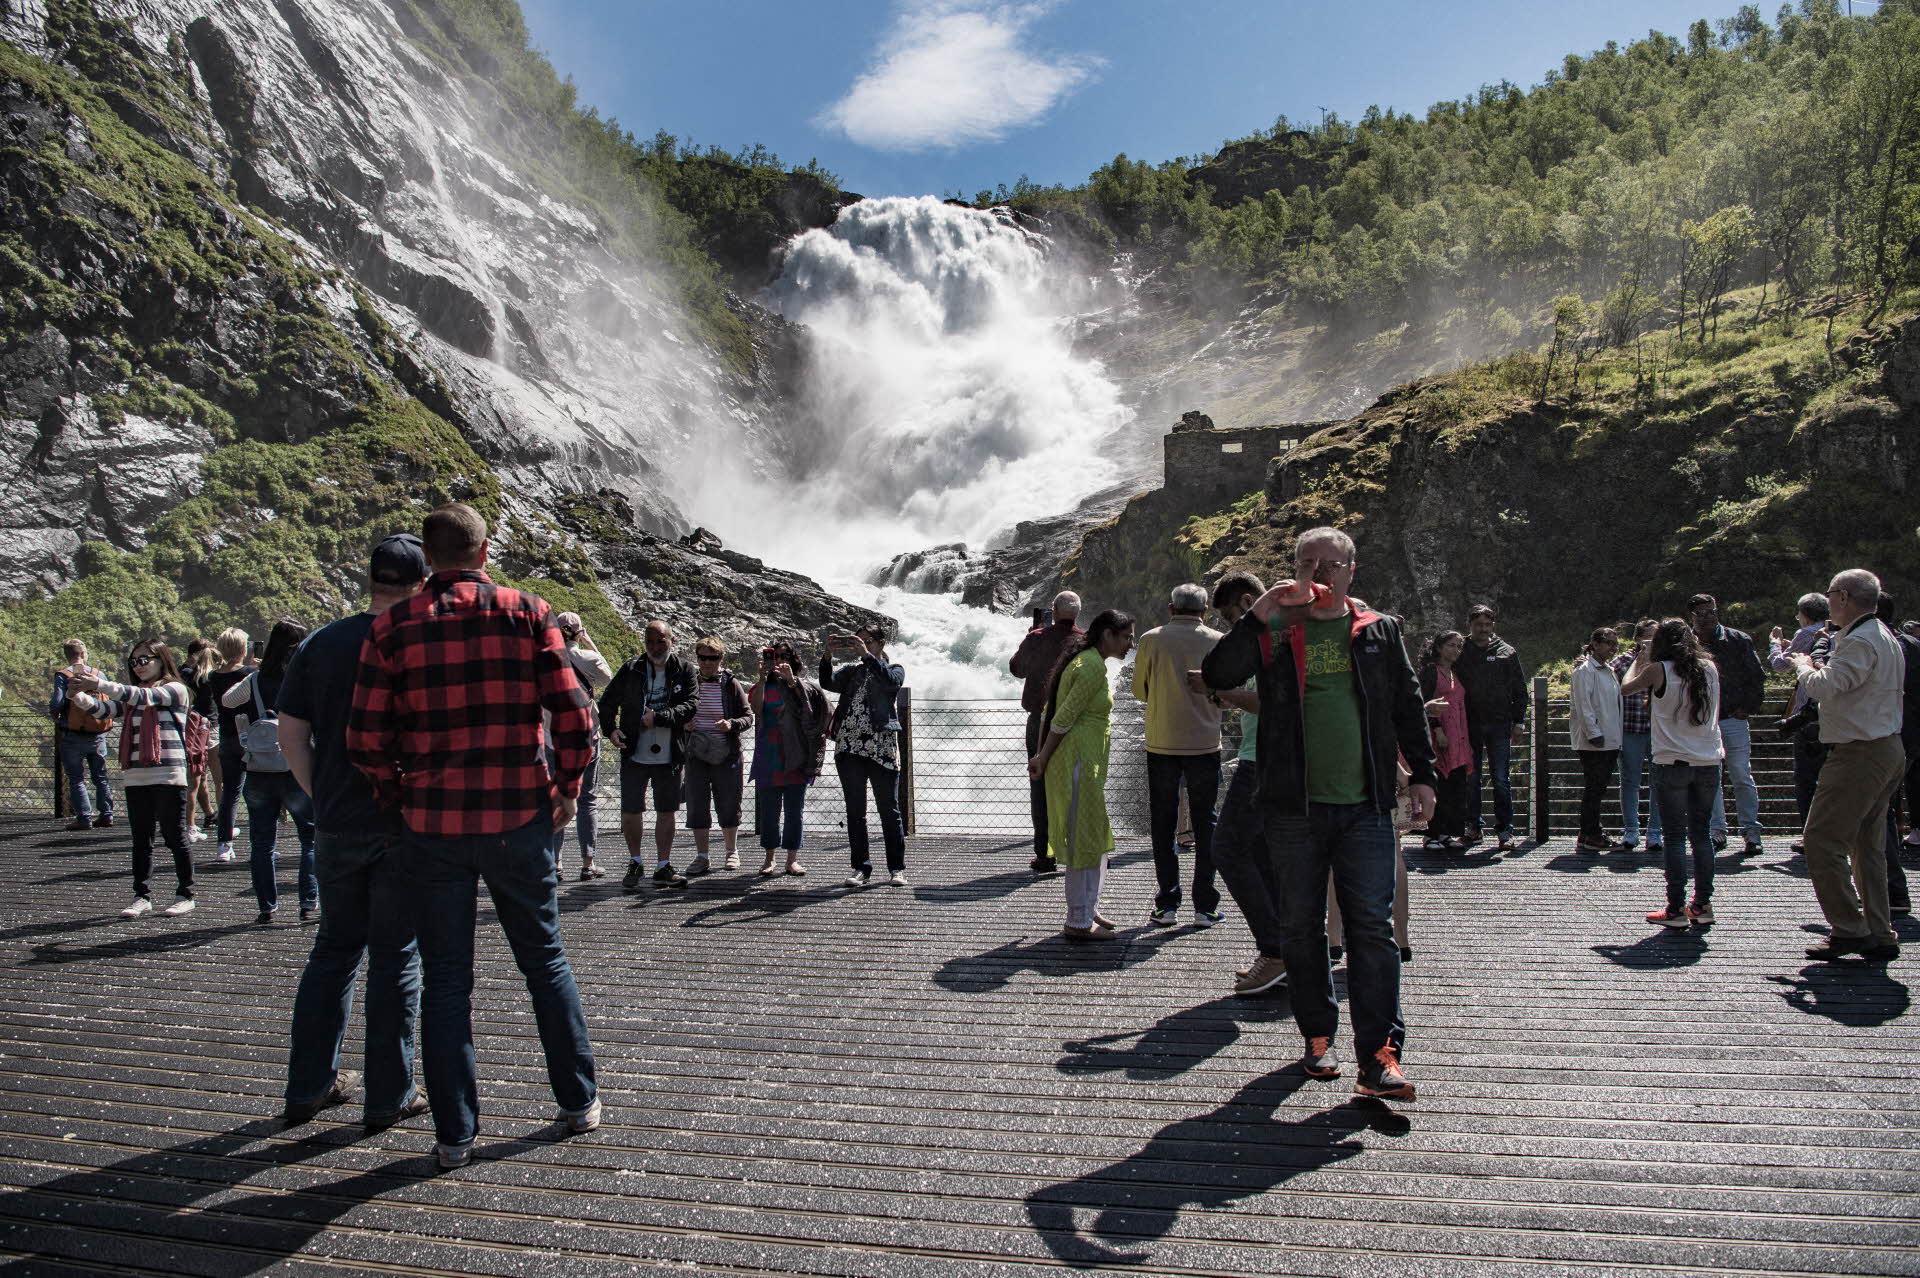 Groupe de touristes debout sur la plateforme d’observation du train de Flåm et surplombant le torrent de la cascade de Kjosfossen en plein été 